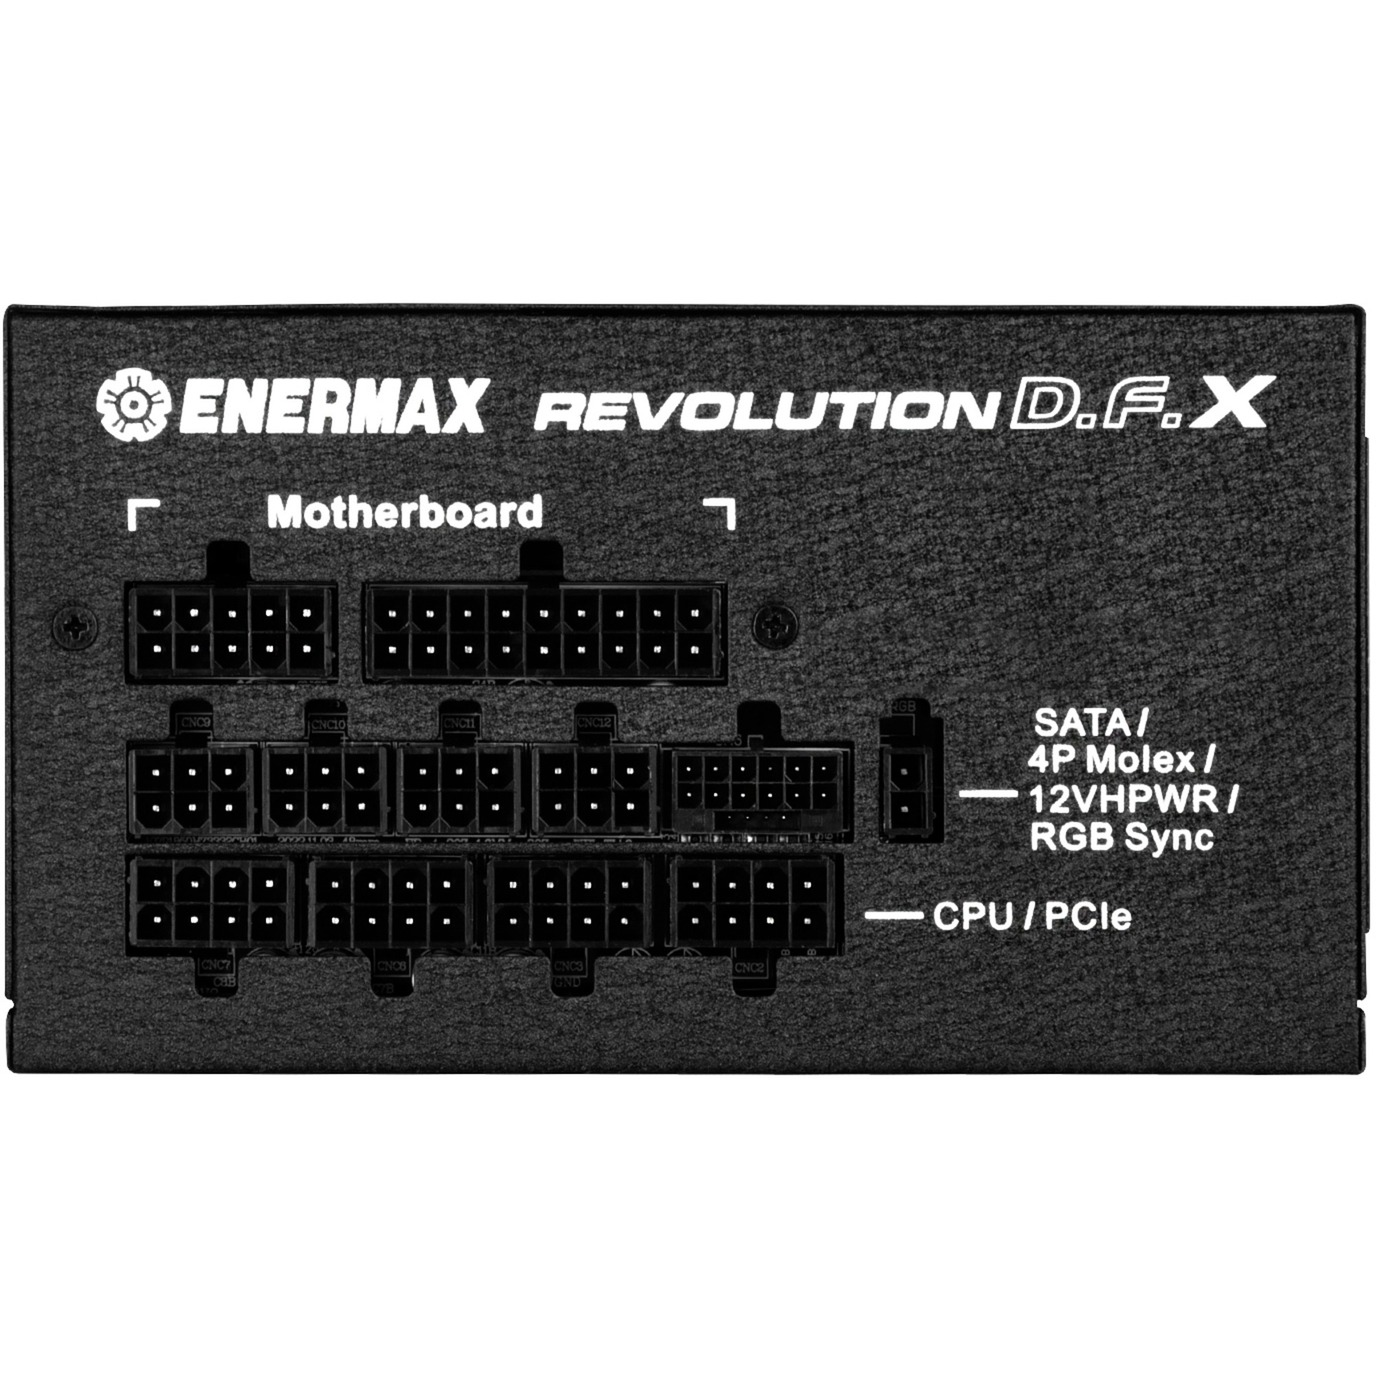 ENERMAX REVOLUTION 850 PC-Netzteil Gold PC 850W Watt Netzteil 80 D.F.X PLUS